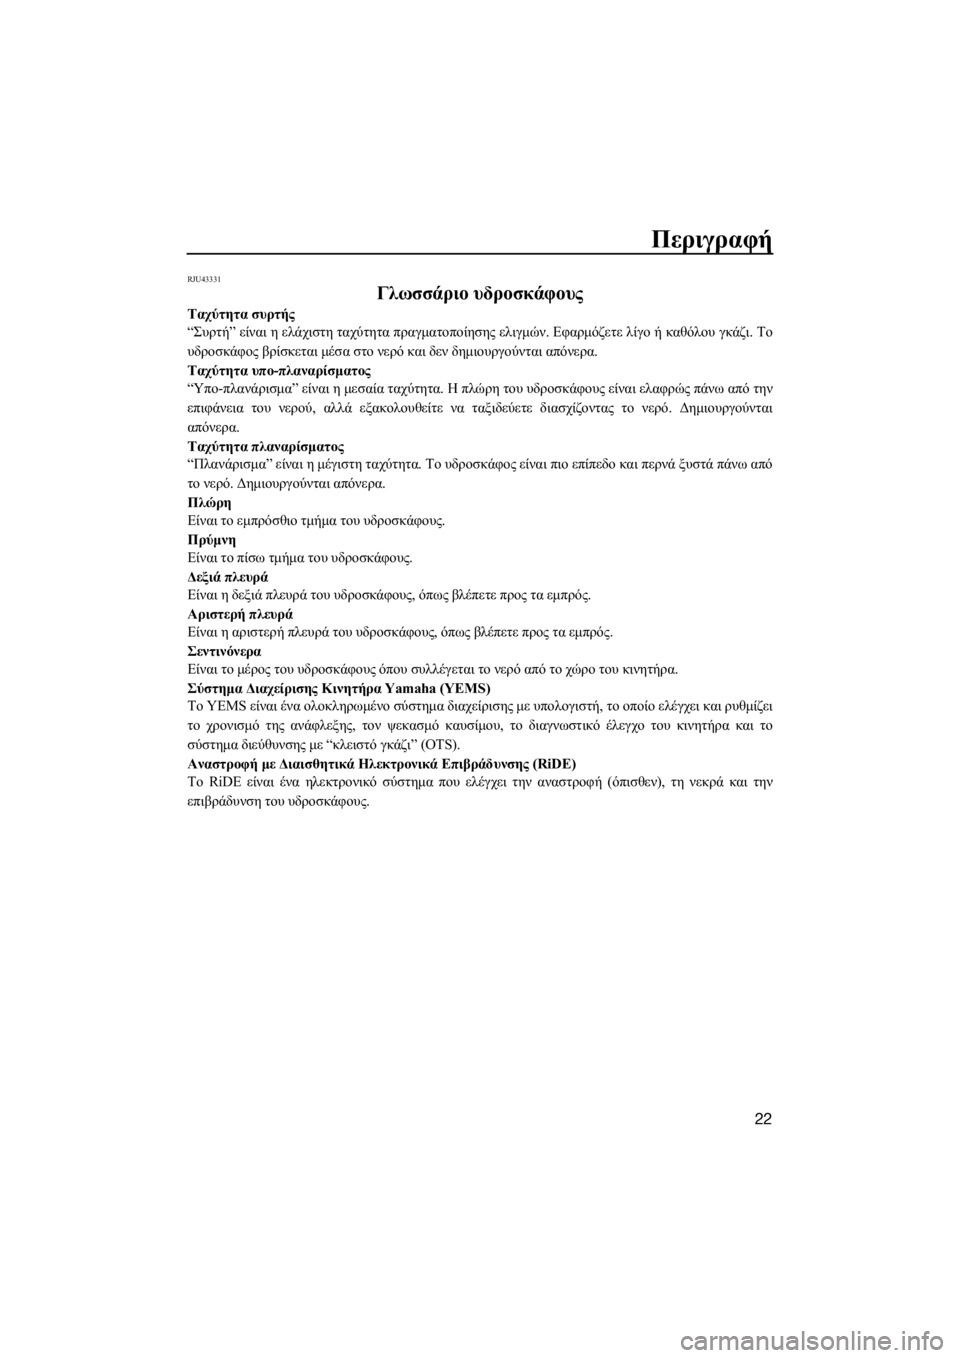 YAMAHA VXR 2015  ΟΔΗΓΌΣ ΧΡΉΣΗΣ (in Greek) Περιγραφή
22
RJU43331
Γλωσσάριο υδροσκάφους
Ταχύτητα συρτής
“Συρτή” είναι η ελάχιστη ταχύτητα πραγματοποίησης �